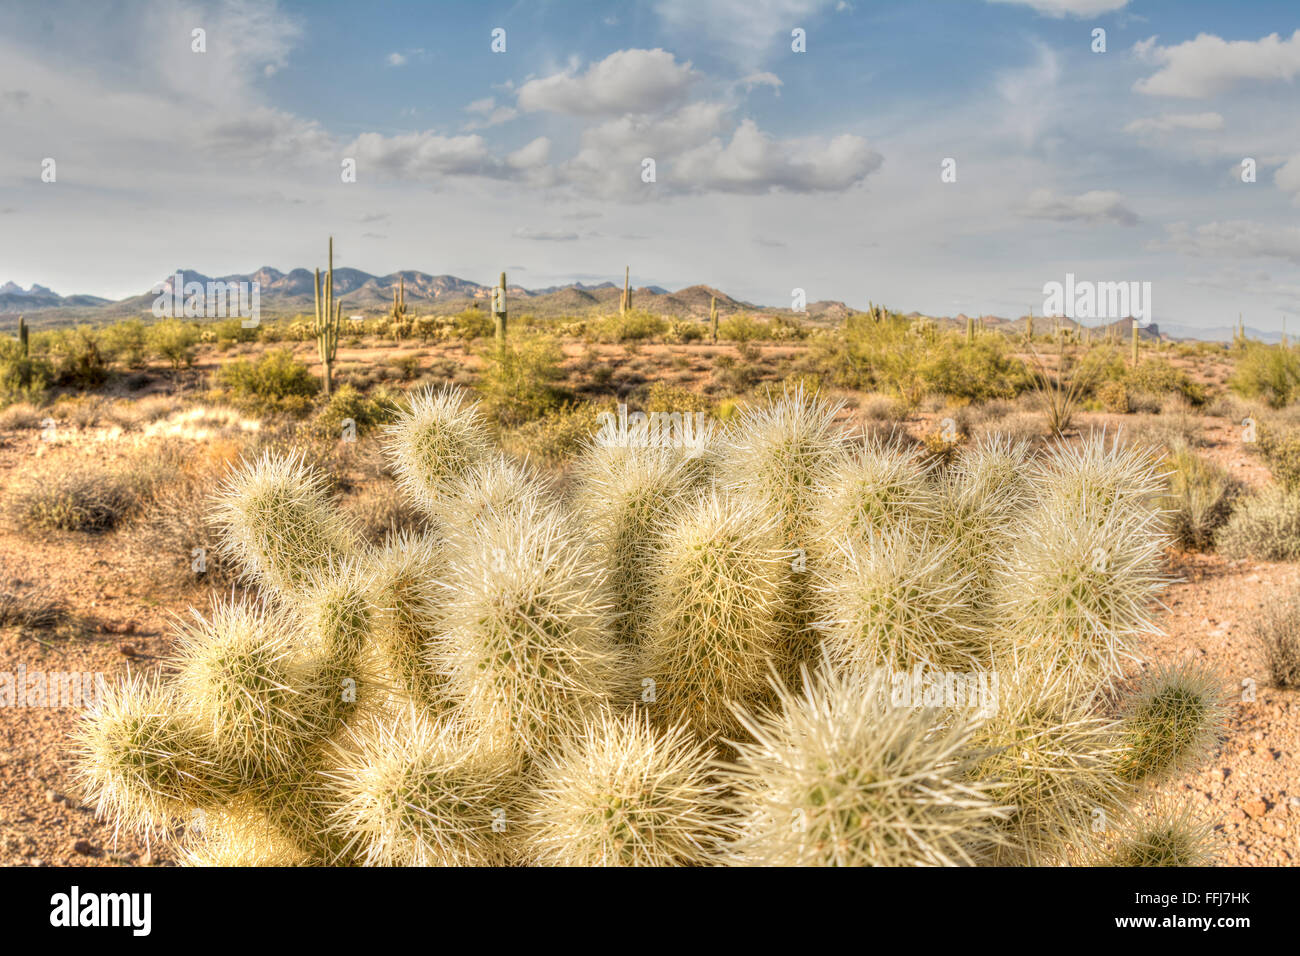 Une image de la superstition à cholla cactus désert en Arizona montre le détail d'un désert sec Banque D'Images